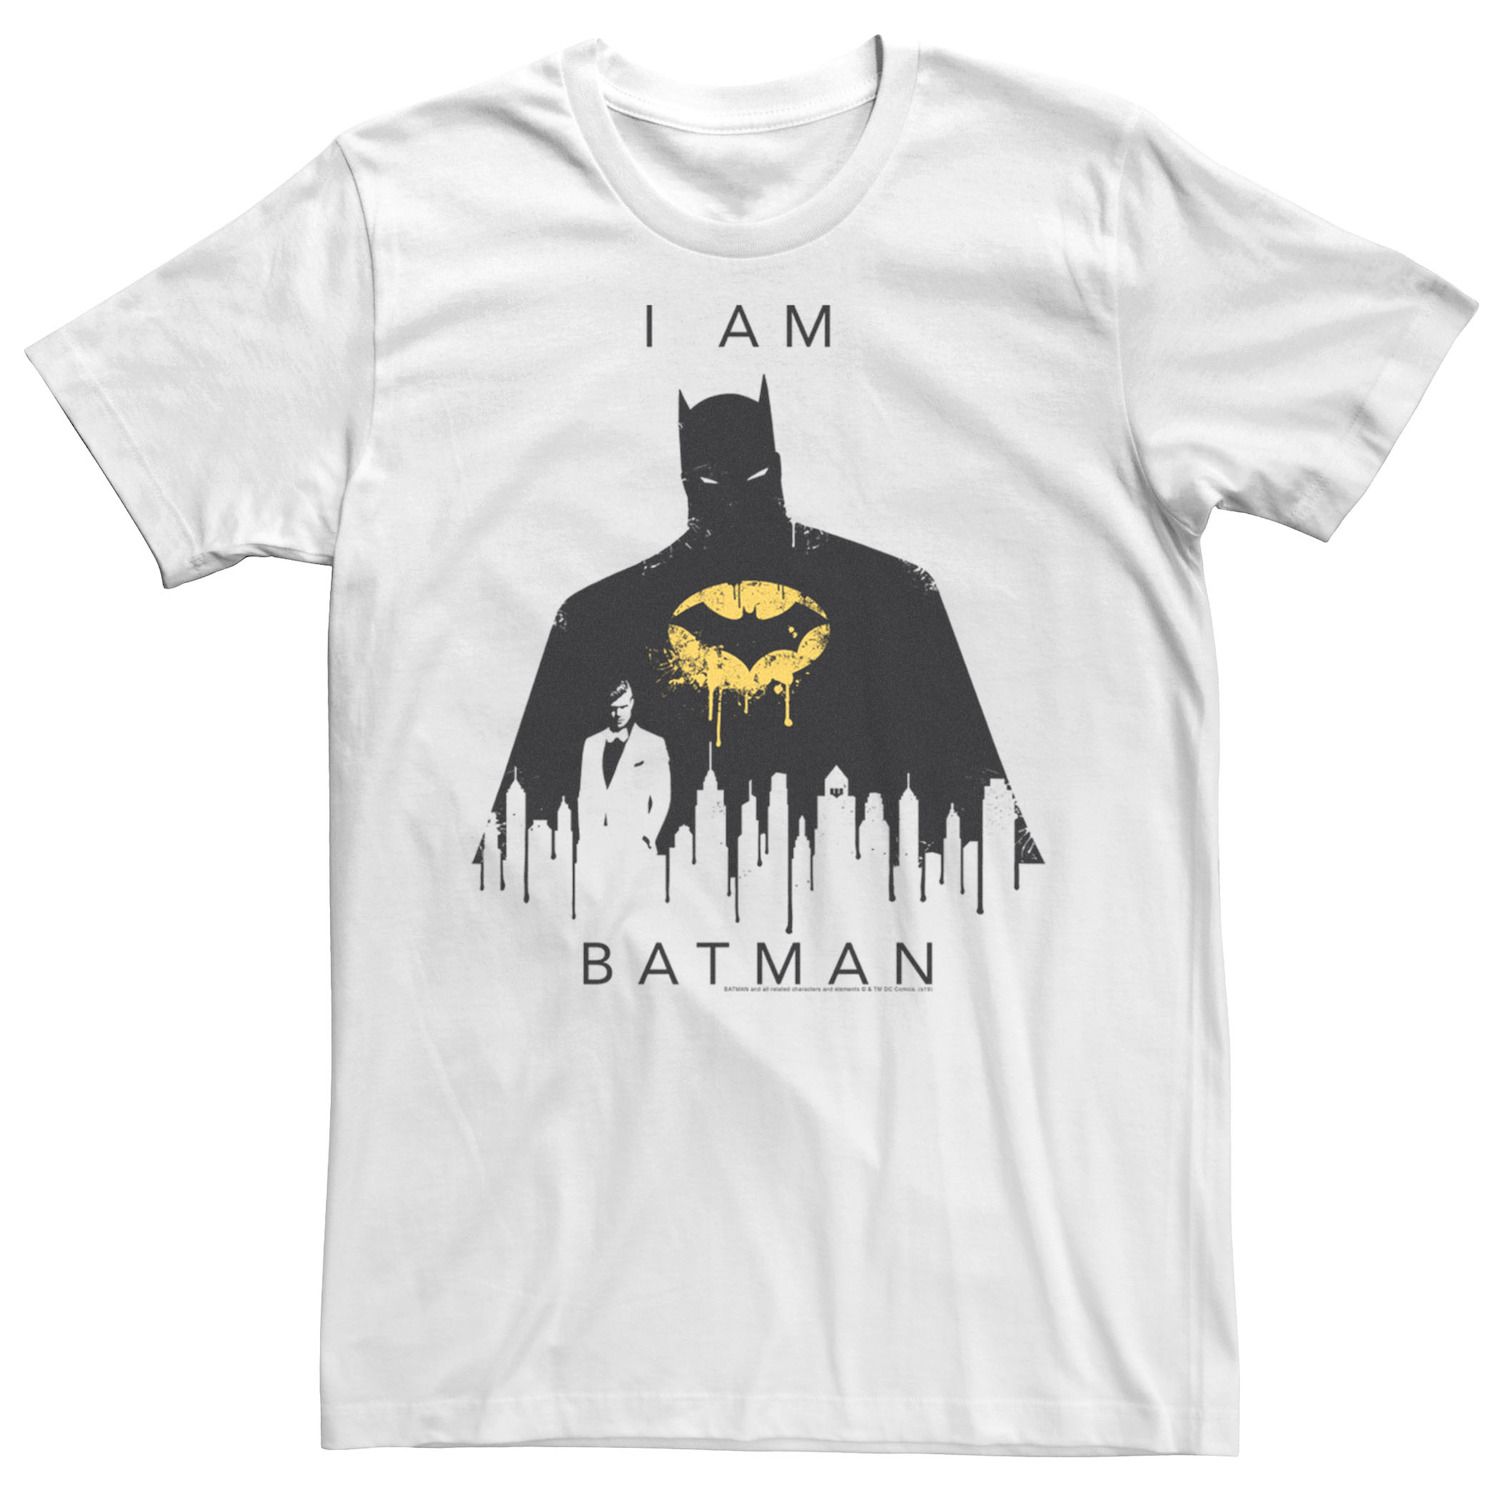 Мужская футболка Batman I Am Batman Licensed Character цена и фото